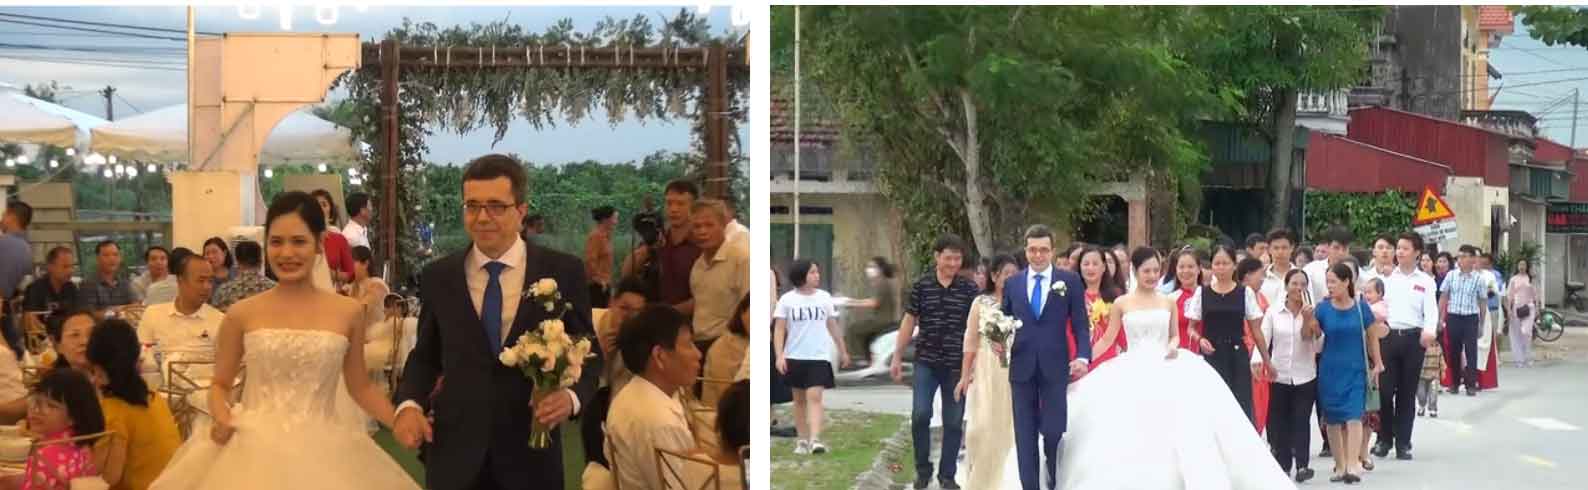 Cá mập Tuệ Lâm kết hôn cùng Tổng Giám đốc ngân hàng, đám cưới ấn tượng tại Hải Dương-10